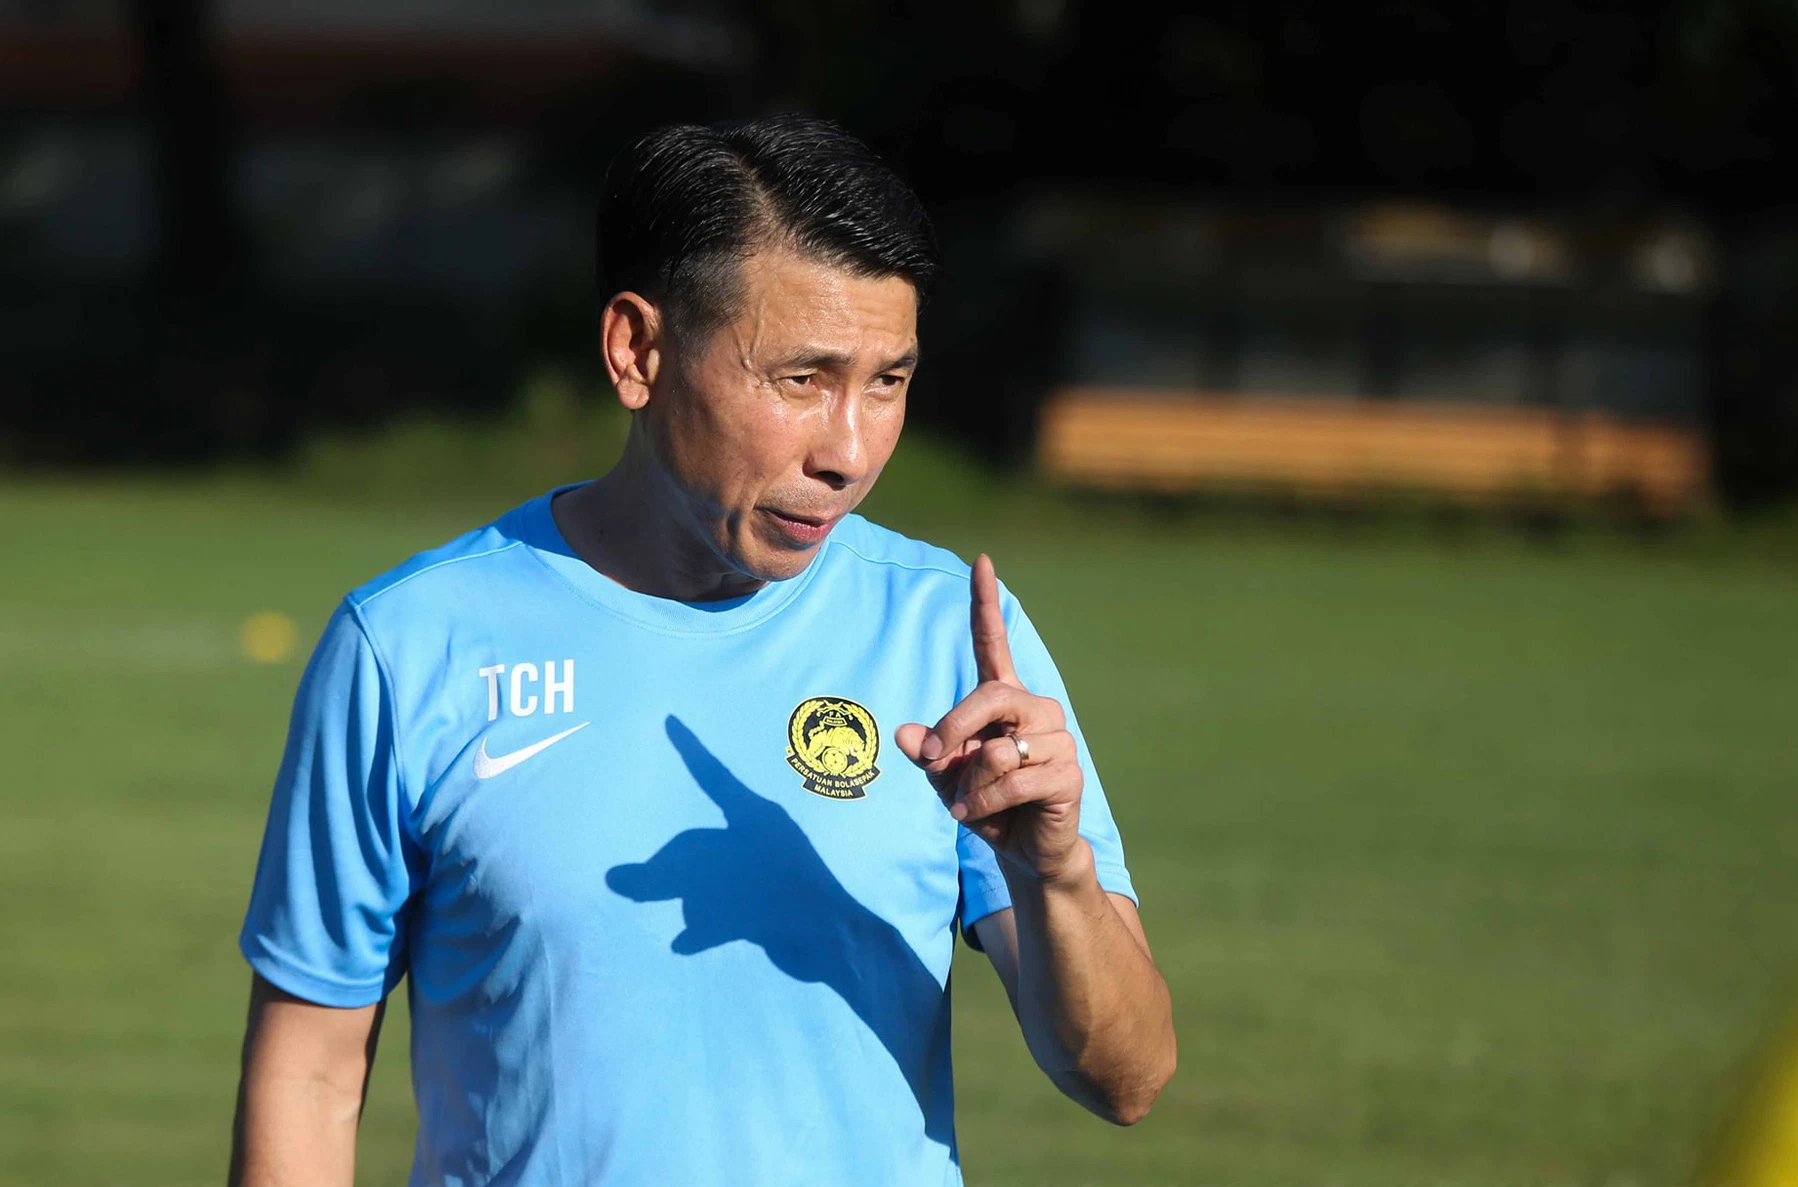 Đối thủ của ĐT Việt Nam tại bảng B AFF Cup 2022: Tham vọng của tuyển Malaysia bị thách thức - Ảnh 1.